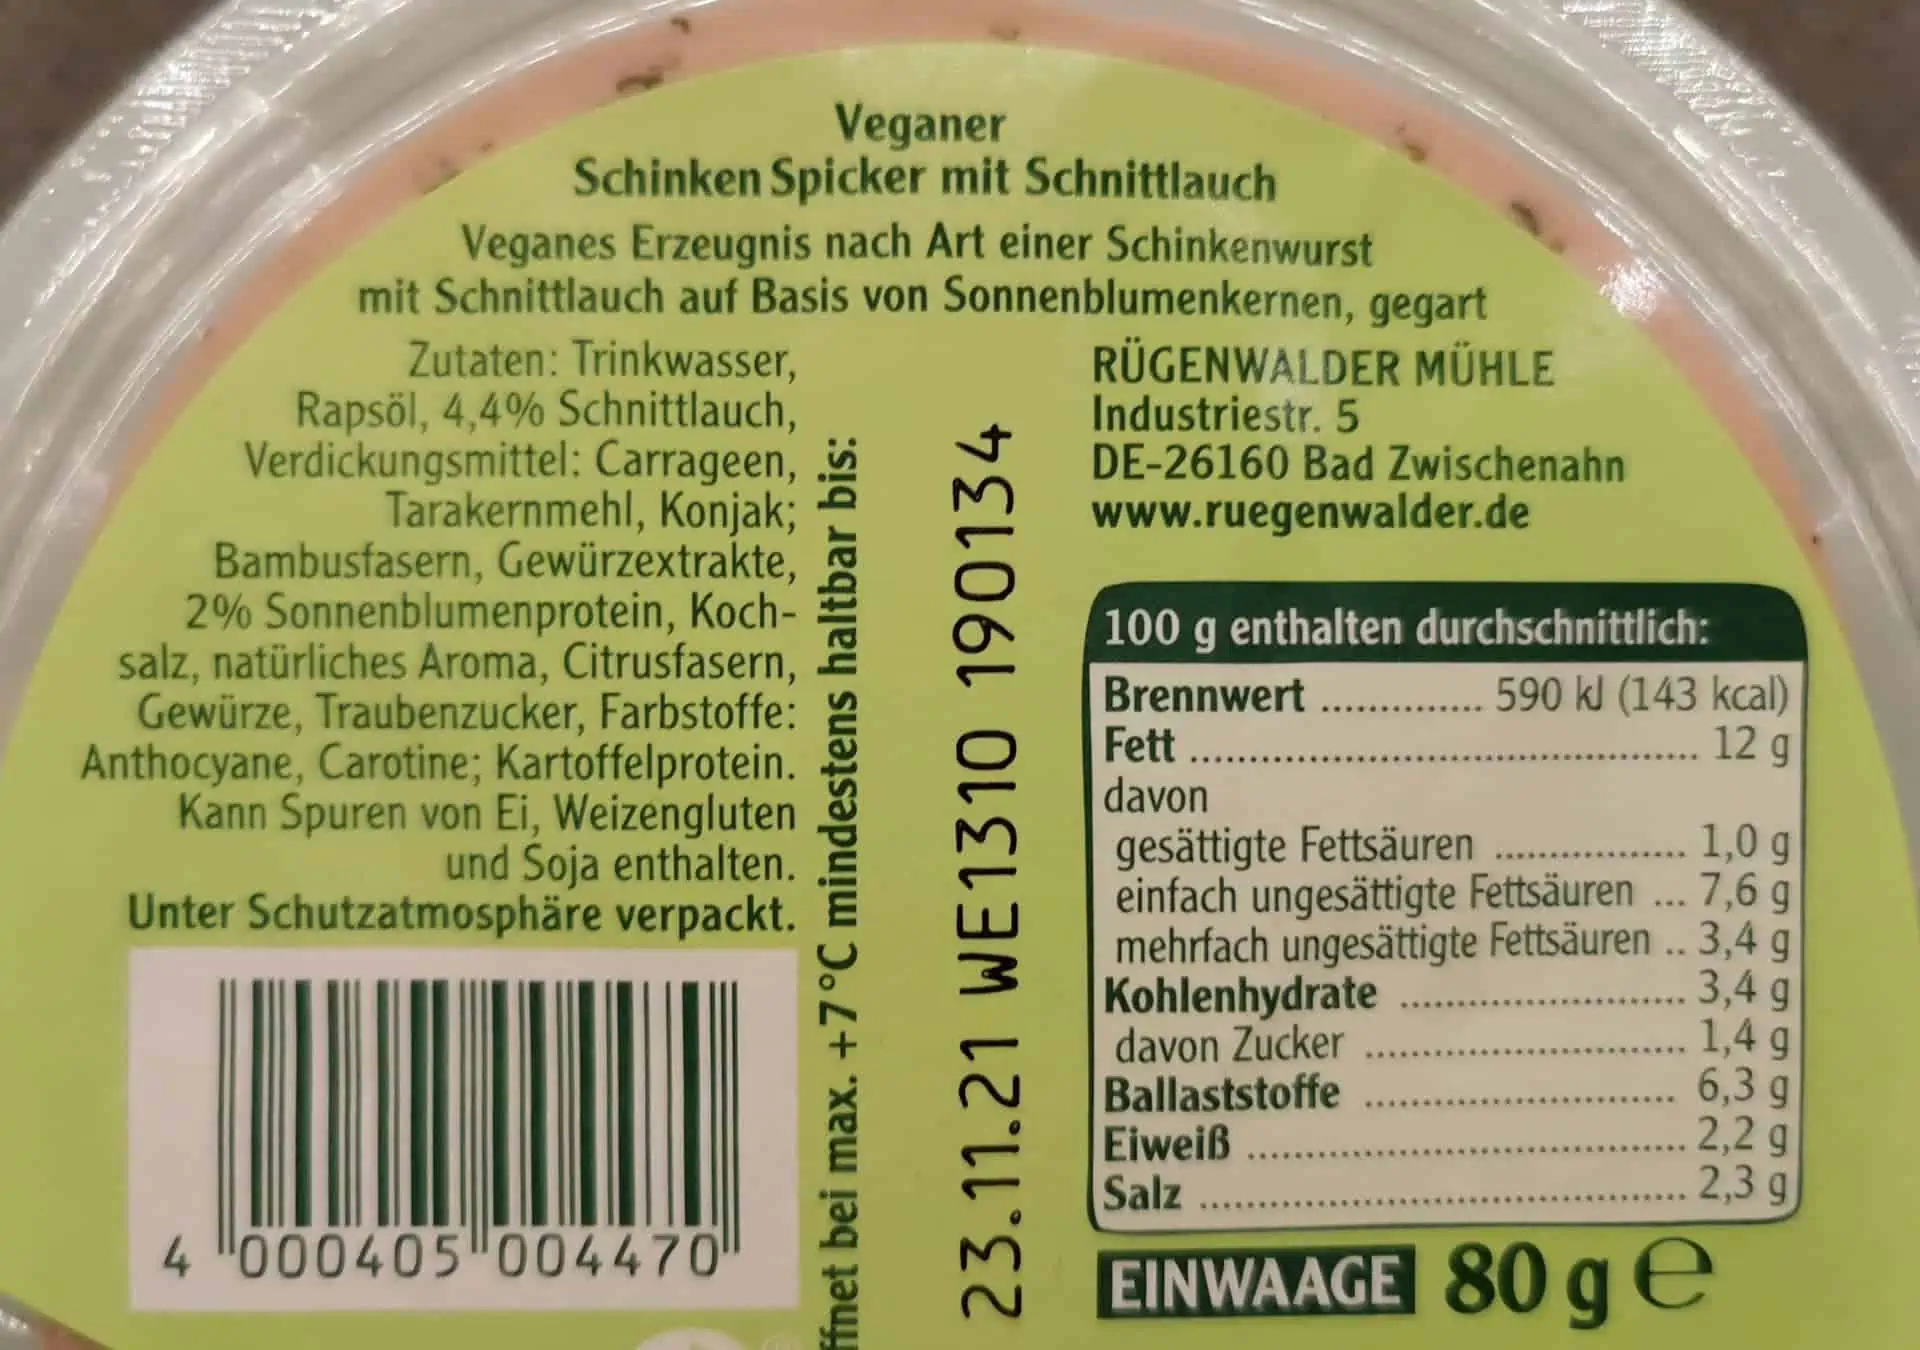 Rügenwalder Mühle: Veganer Schinkenspicker mit Schnittlauch Inhaltsstoffe & Zutaten